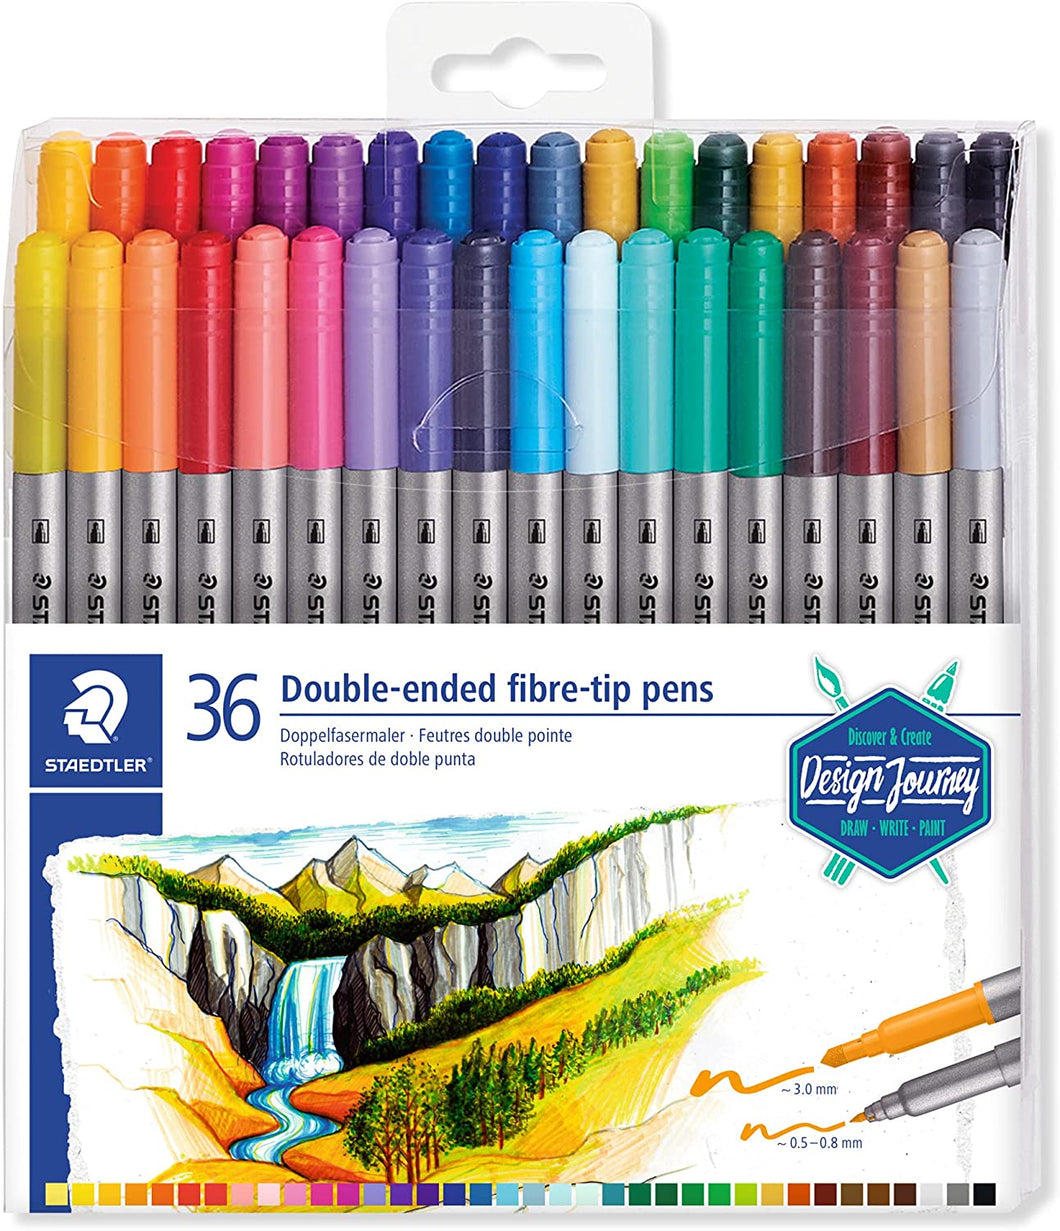 Staedtler 36 Pack - Double-Ended Fibre-Tip Pens